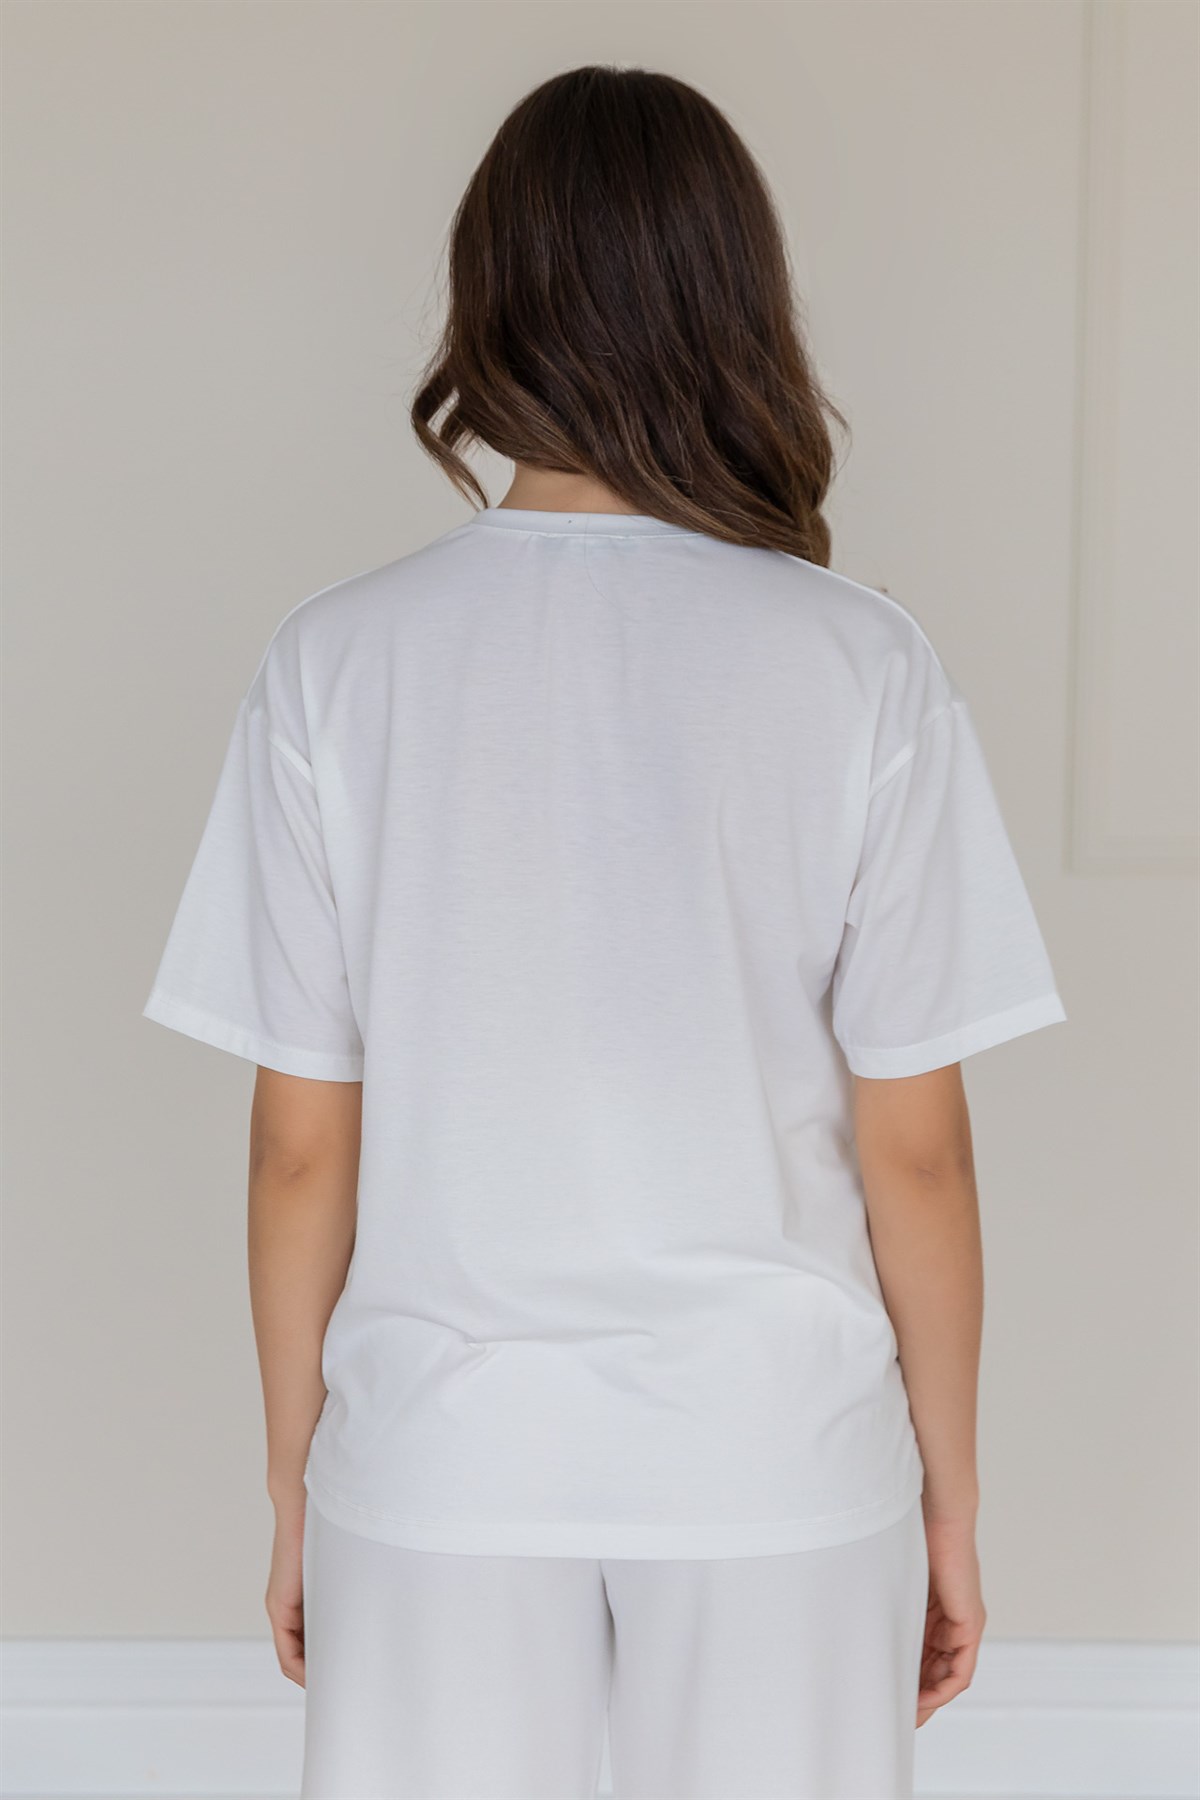 Deniz Butik Kadın Baskılı T-shirt - BEYAZ. 5